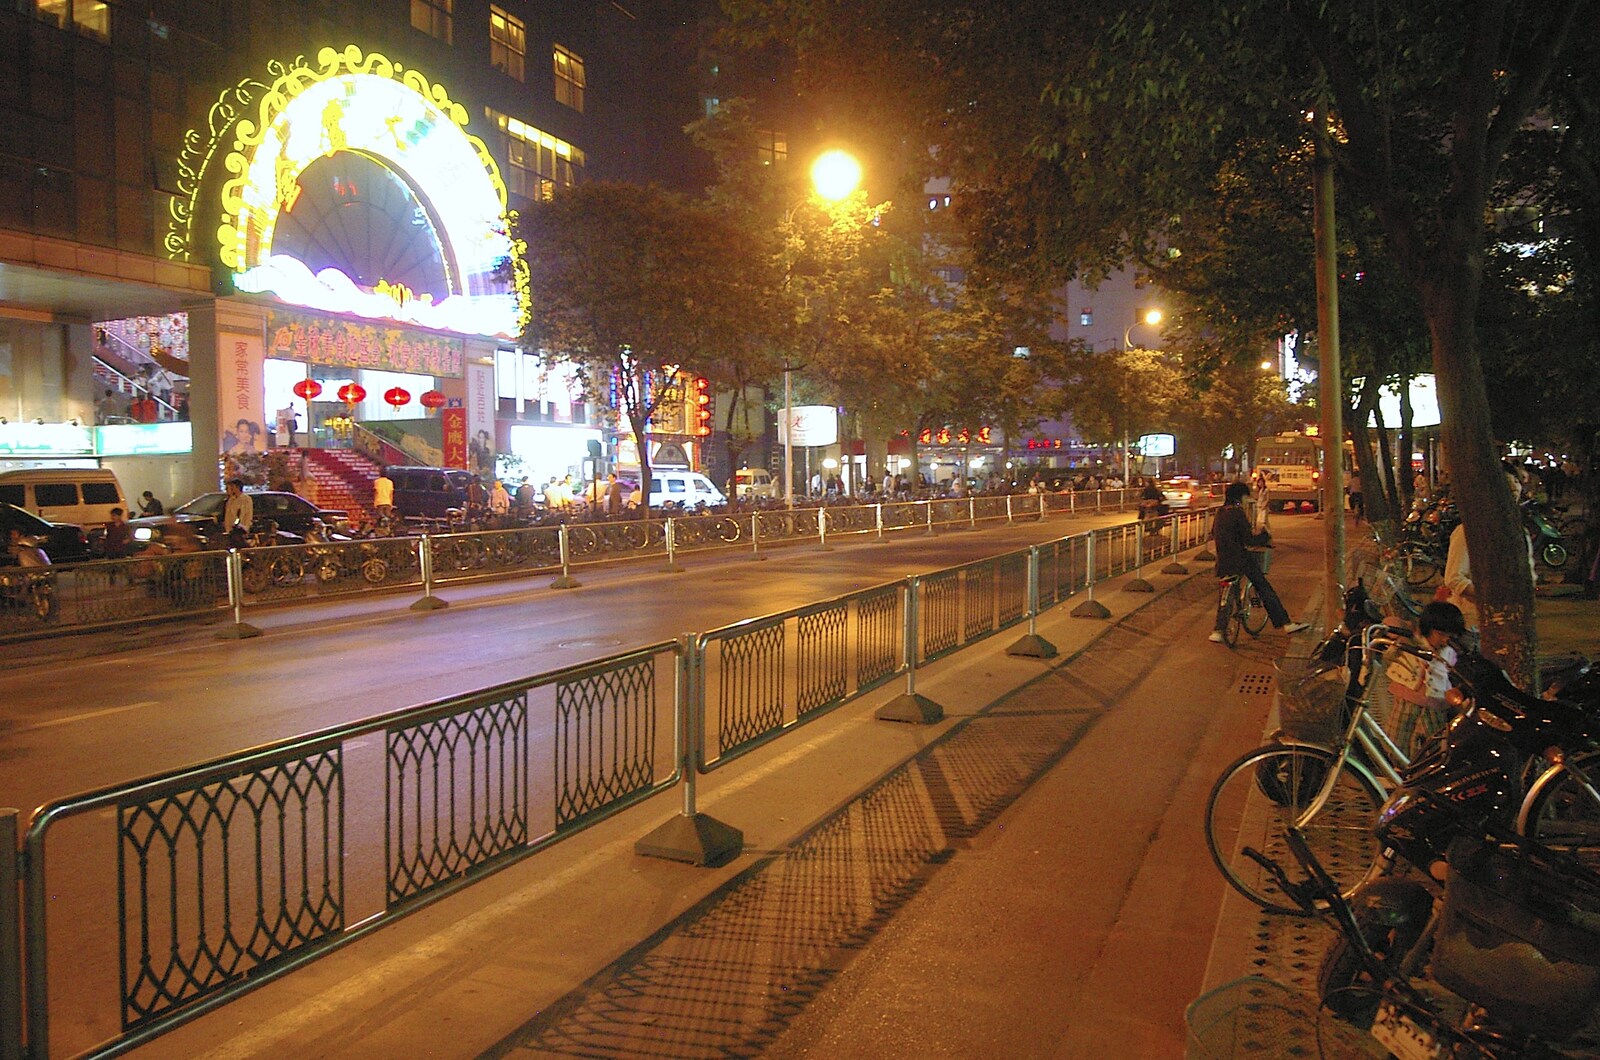 A Nanjing street from Nanjing by Night, Nanjing, Jiangsu Province, China - 4th October 2006